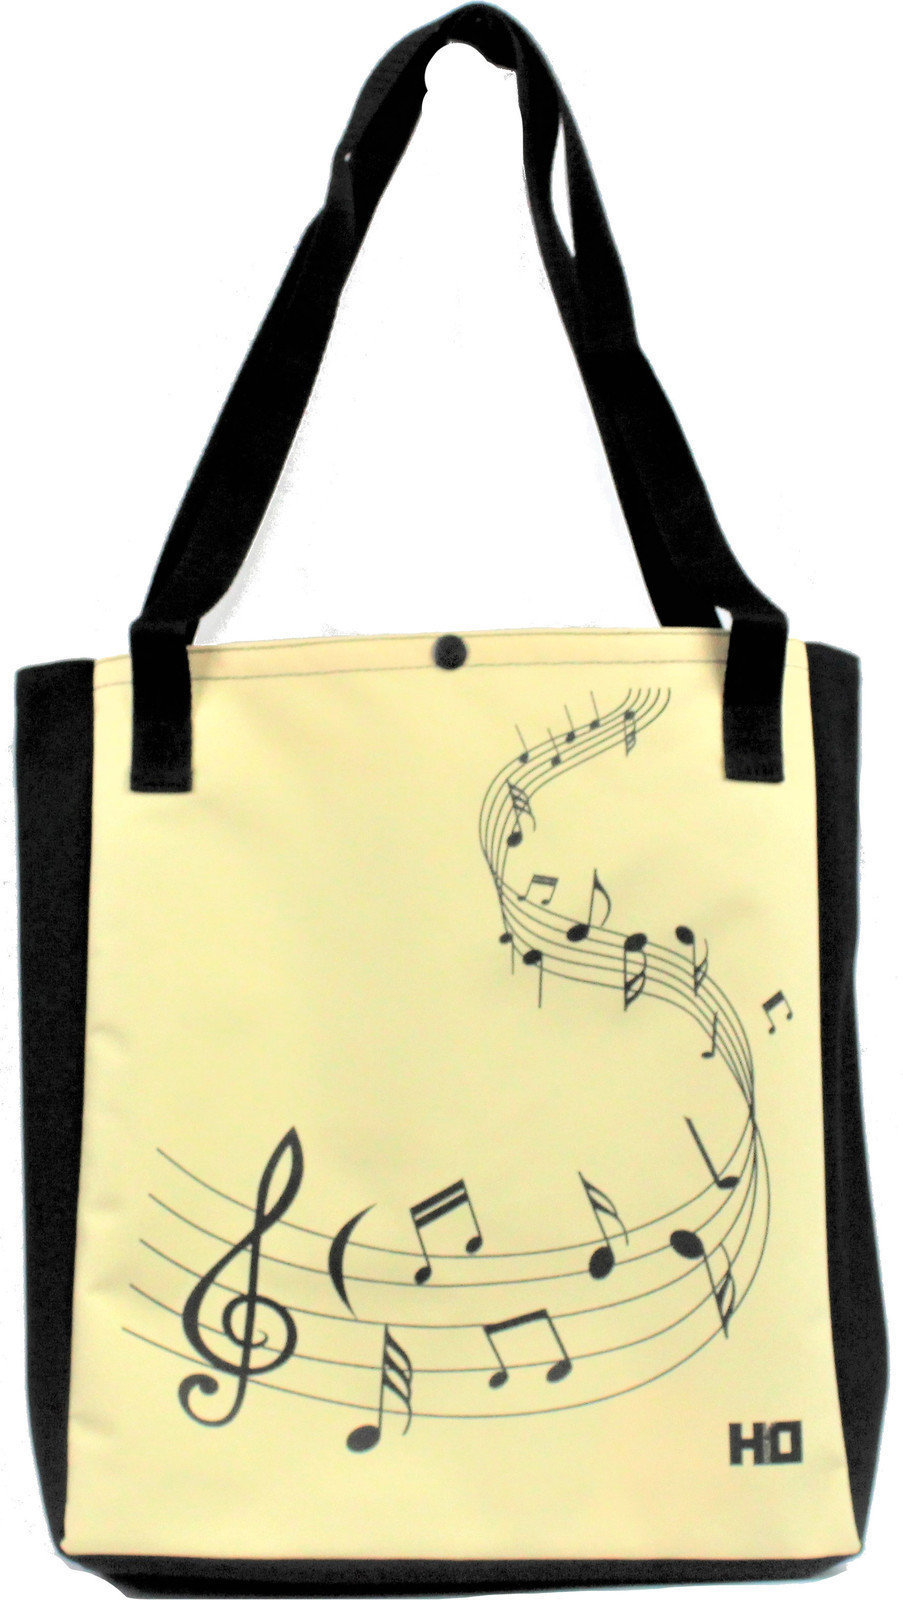 Τσάντα για ψώνια Hudební Obaly H-O Melody Vanila-Black